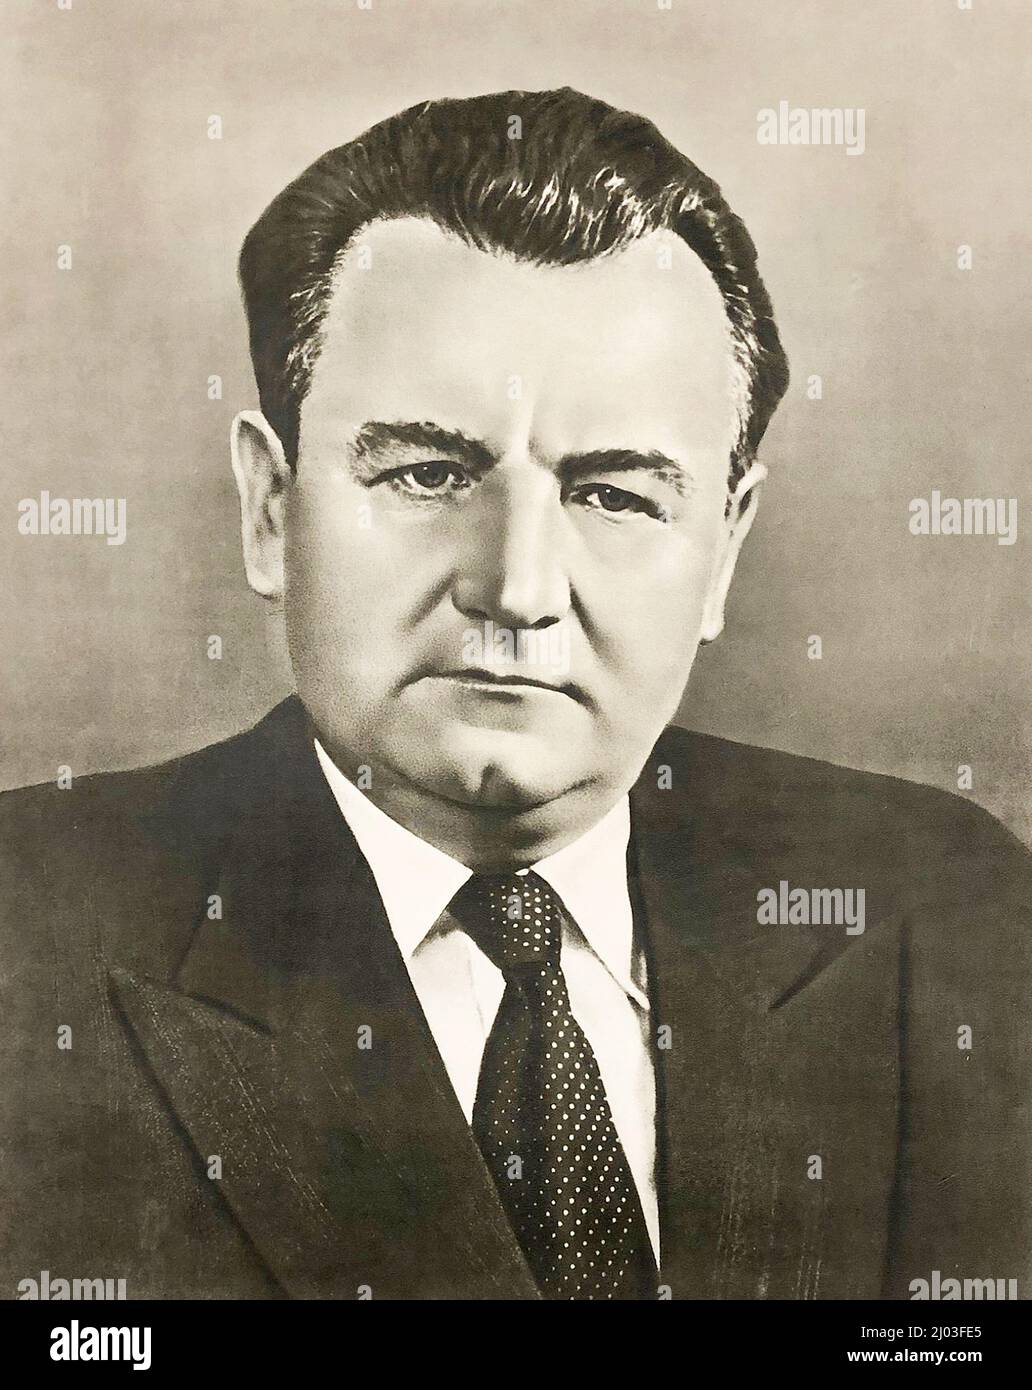 Foto retrato de Klement Gottwald (1896 – 1953). Fue un político comunista checo, que fue el líder del Partido Comunista de Checoslovaquia desde 1929 hasta su muerte en 1953, titulado como secretario general hasta 1945 y como presidente desde 1945 hasta 1953. Fue el primer líder de la Checoslovaquia comunista de 1948 a 1953. Foto de stock